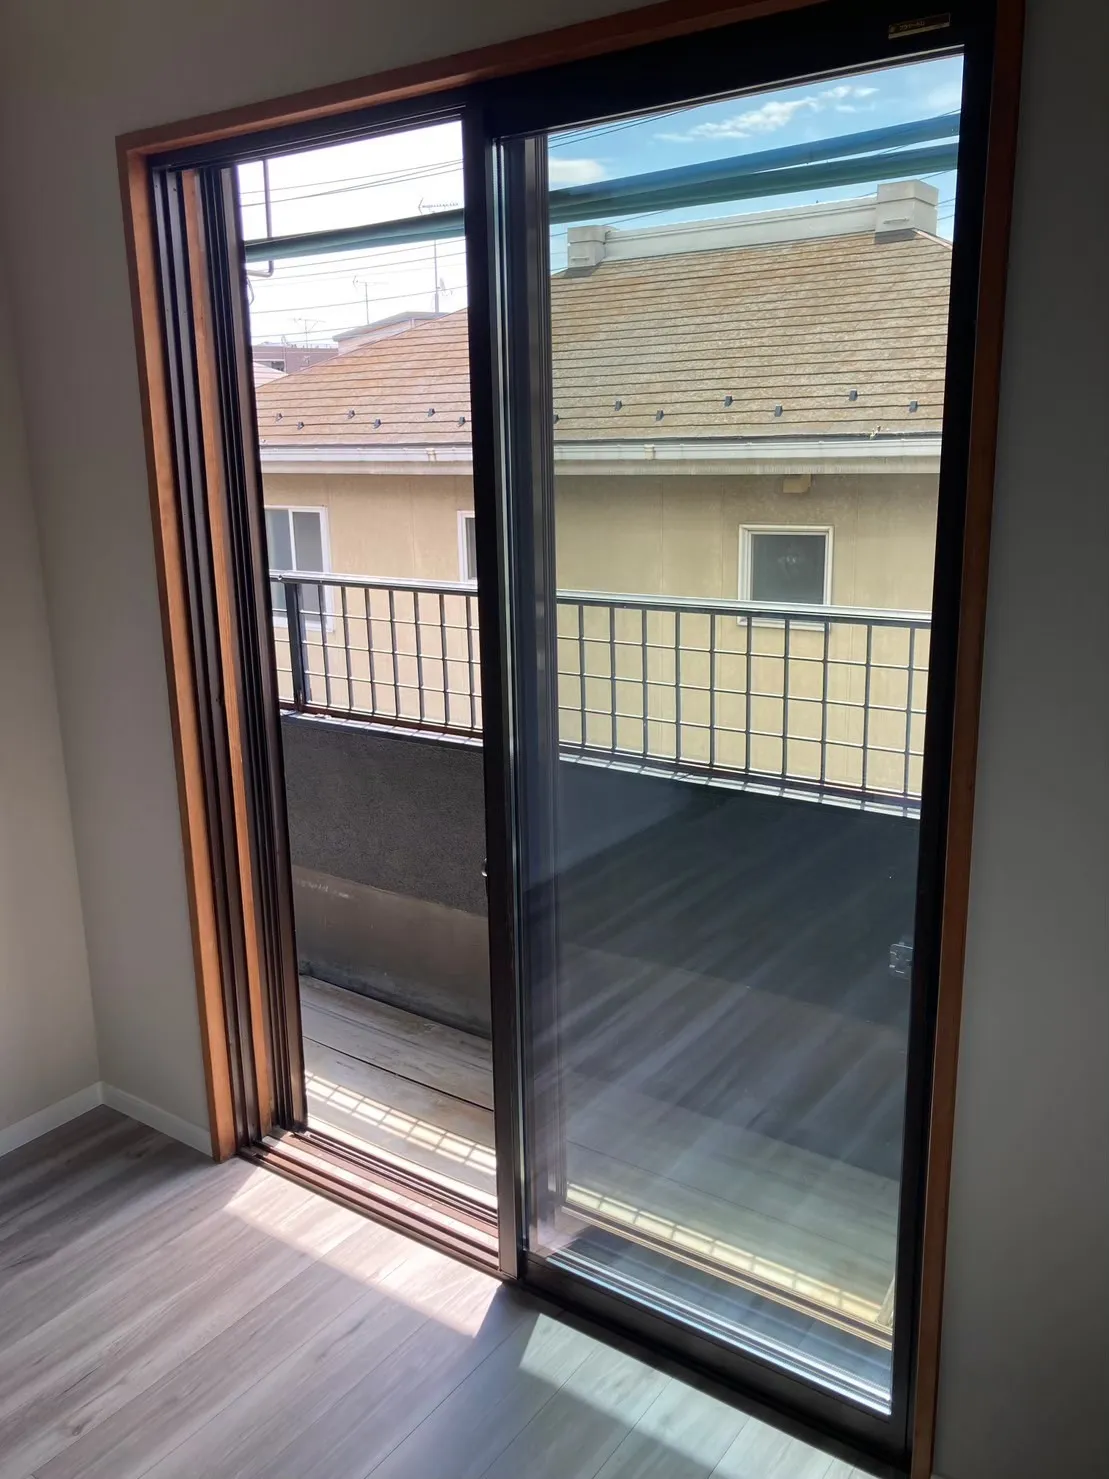 【2階洋室内窓設置】<br>YKK「マドリモ内窓プラマードU」を設置。<br>今ある窓に内窓を取付けて二重窓にし、窓の断熱性を高めることができ、室外からの騒音対策にも効果的です。<br>先進的窓リノベ補助金対象工事です。